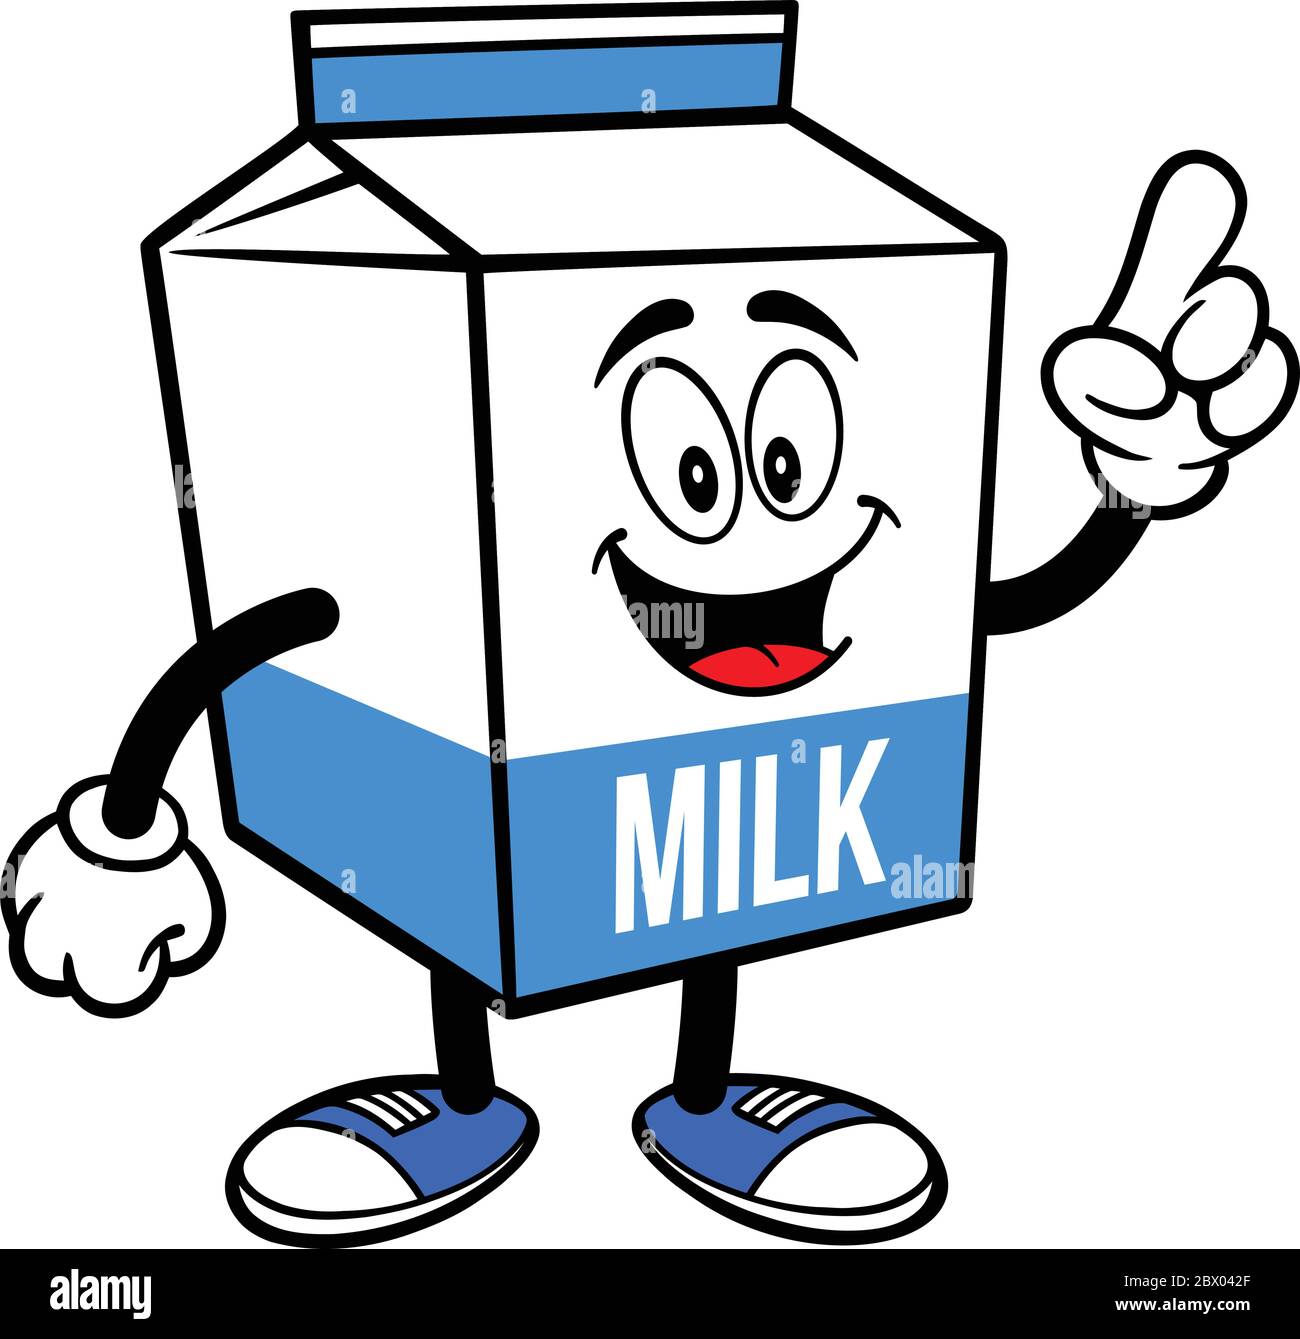 Scatola del latte Mascot Pointing - un cartoon illustrazione di un cartone  del latte Mascot Pointing Immagine e Vettoriale - Alamy